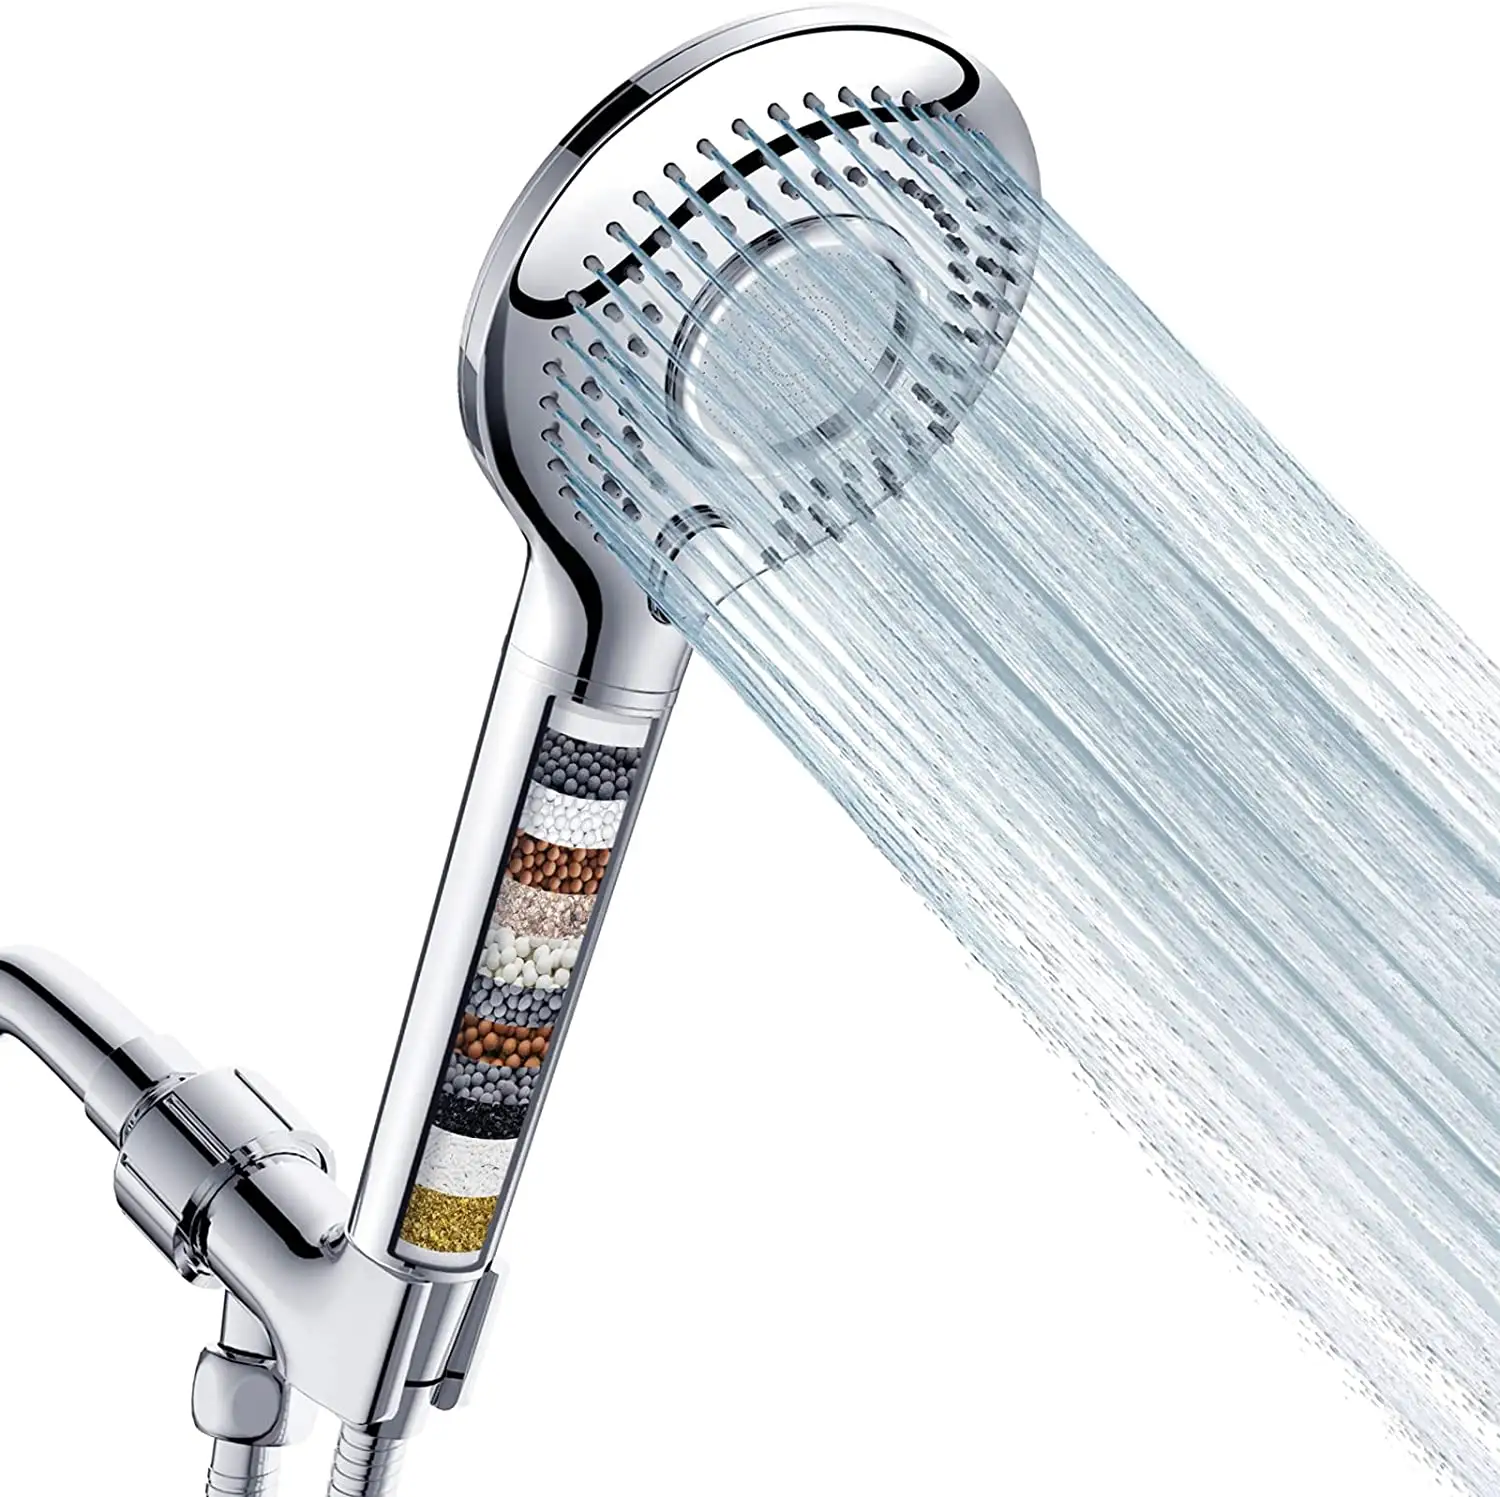 फिल्टर उच्च दबाव 3 स्प्रे मोड के साथ हाथ में सिर बौछार Showerhead के साथ 60 "नली ब्रैकेट और 15 चरण पानी सॉफ़्नर फिल्टर